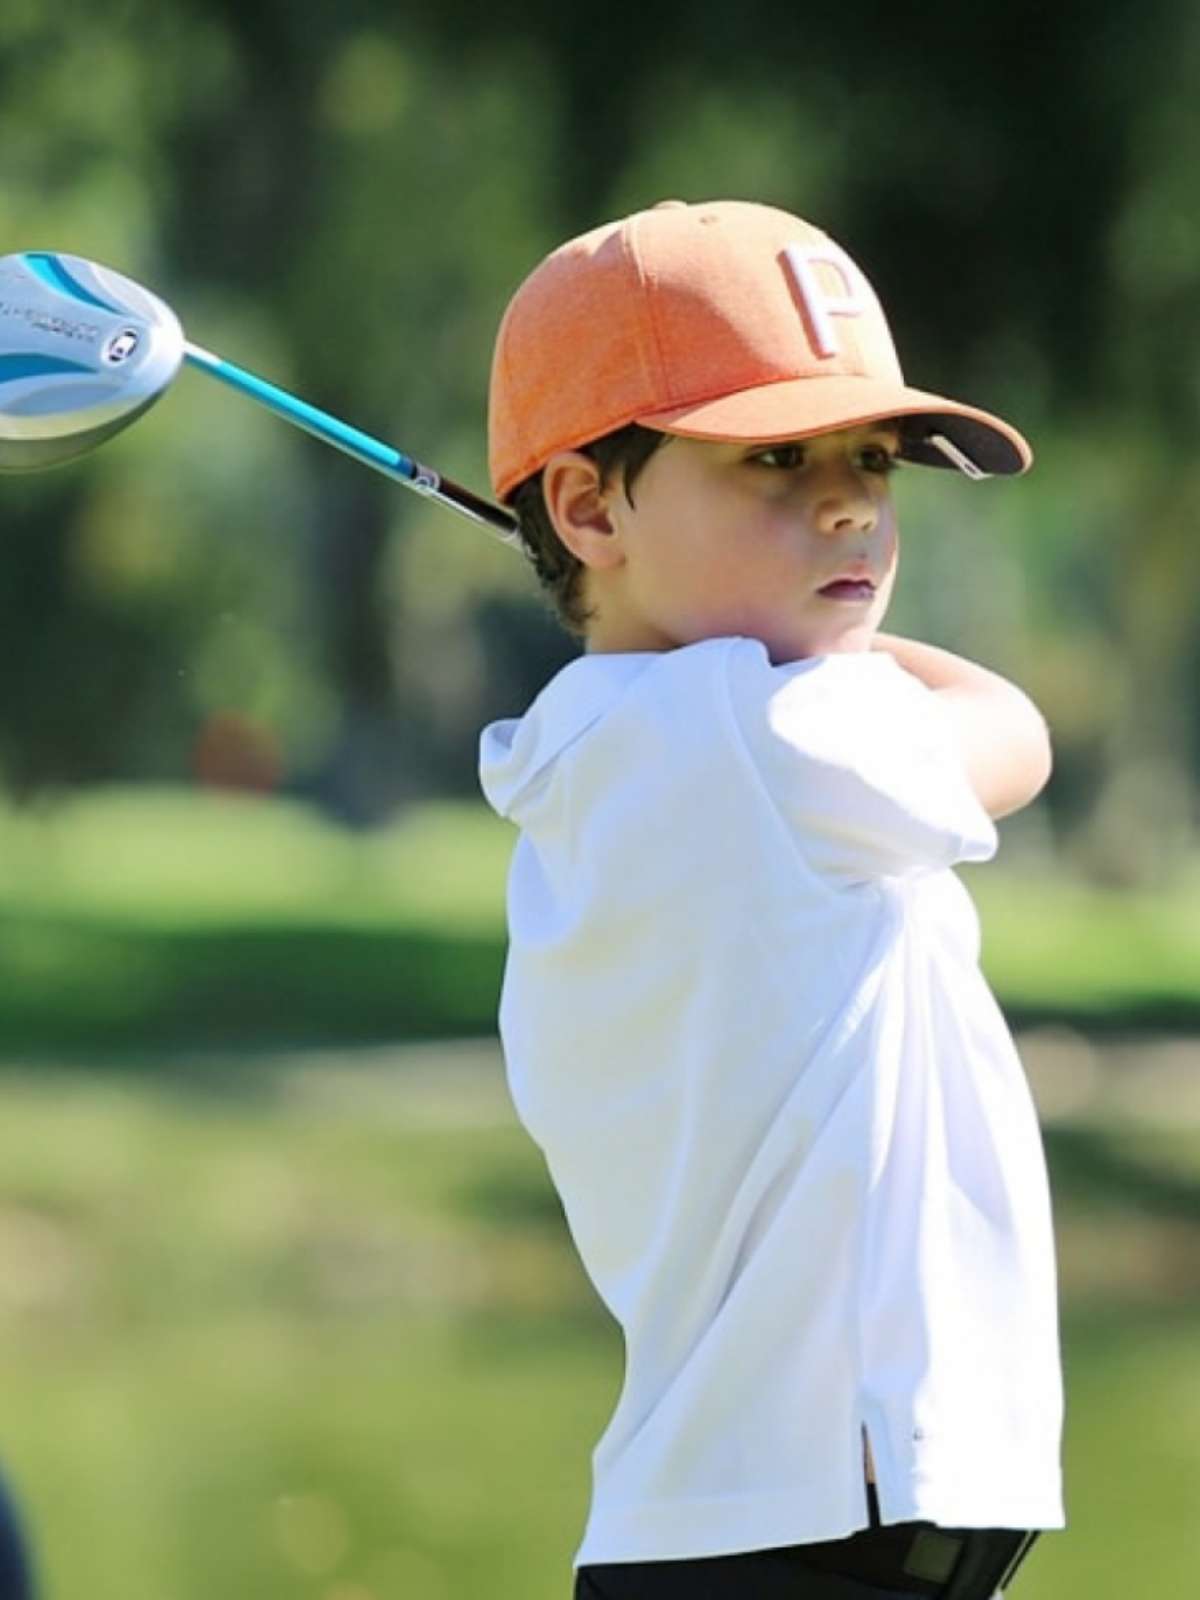 Brasileiro de oito anos é campeão mundial de golfe infantil pela terceira  vez, golfe